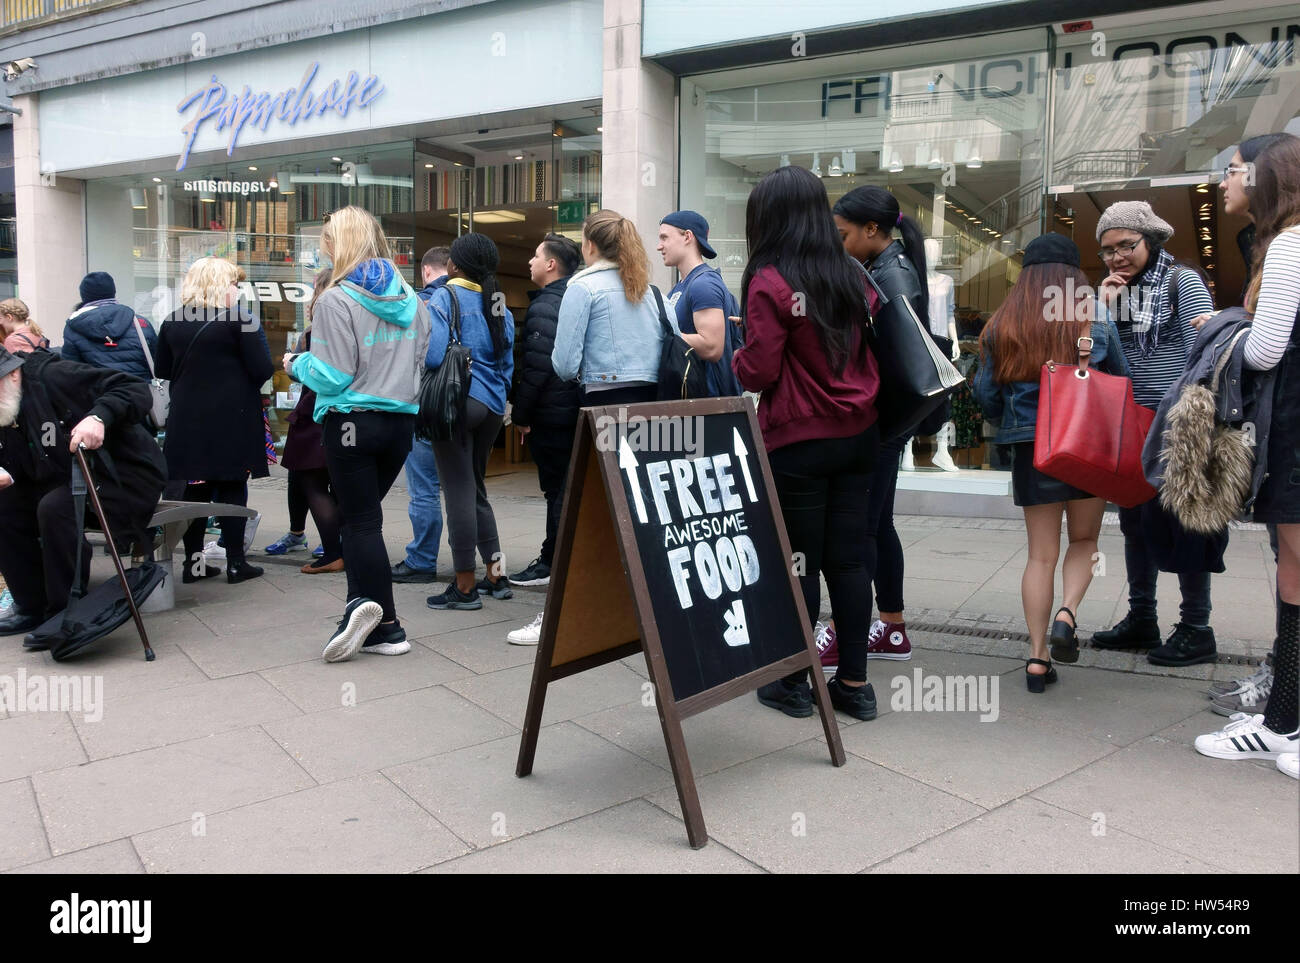 Menschen in die Warteschlange für freies Essen bei Deliveroo Förderung im Norden Londons Shopping Center Stockfoto